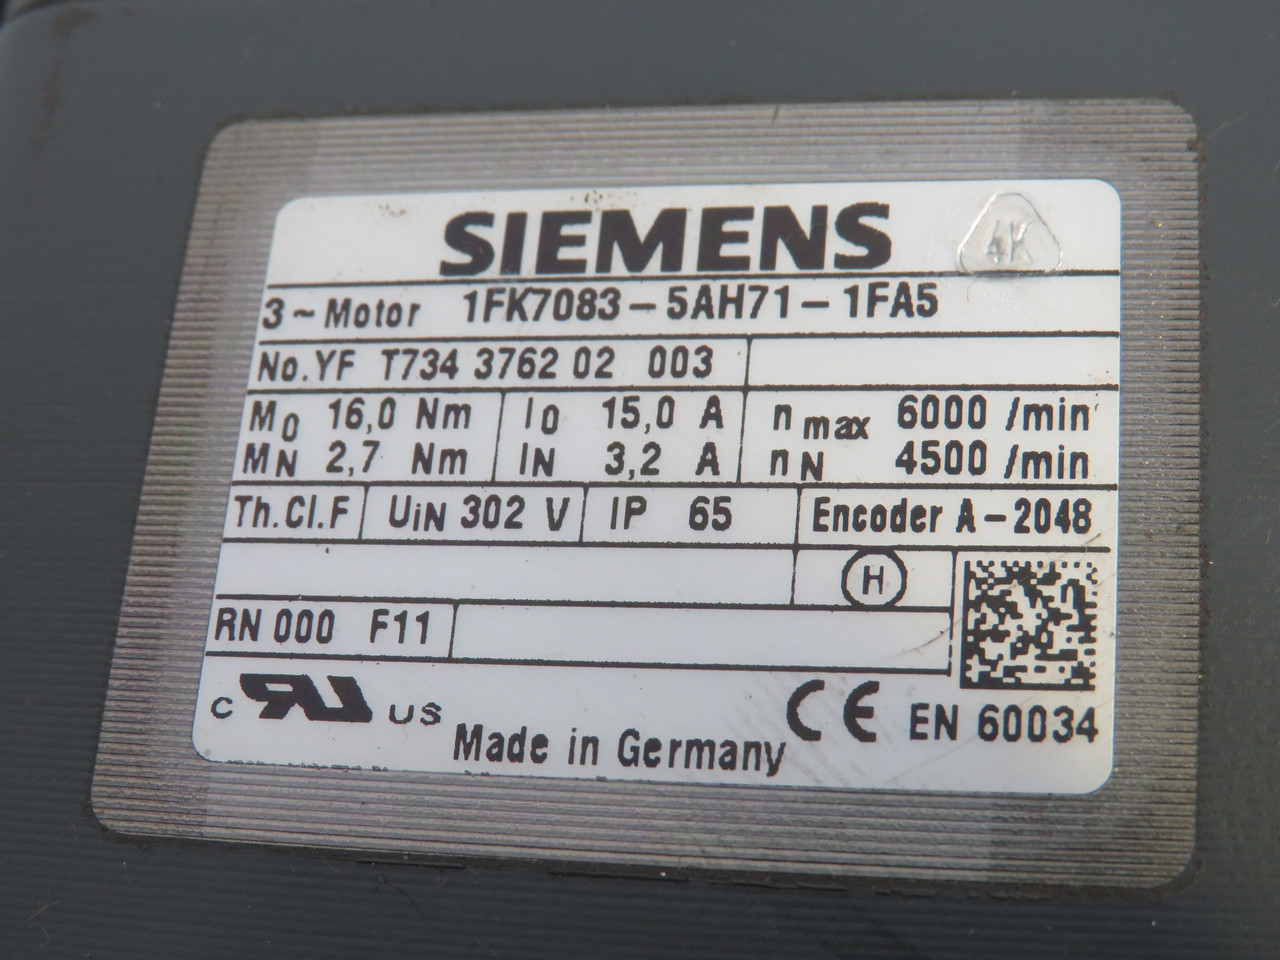 Siemens 1FK7083-5AH71-1FA5 Synchronous Servo Motor 6000/4500RPM 302V USED